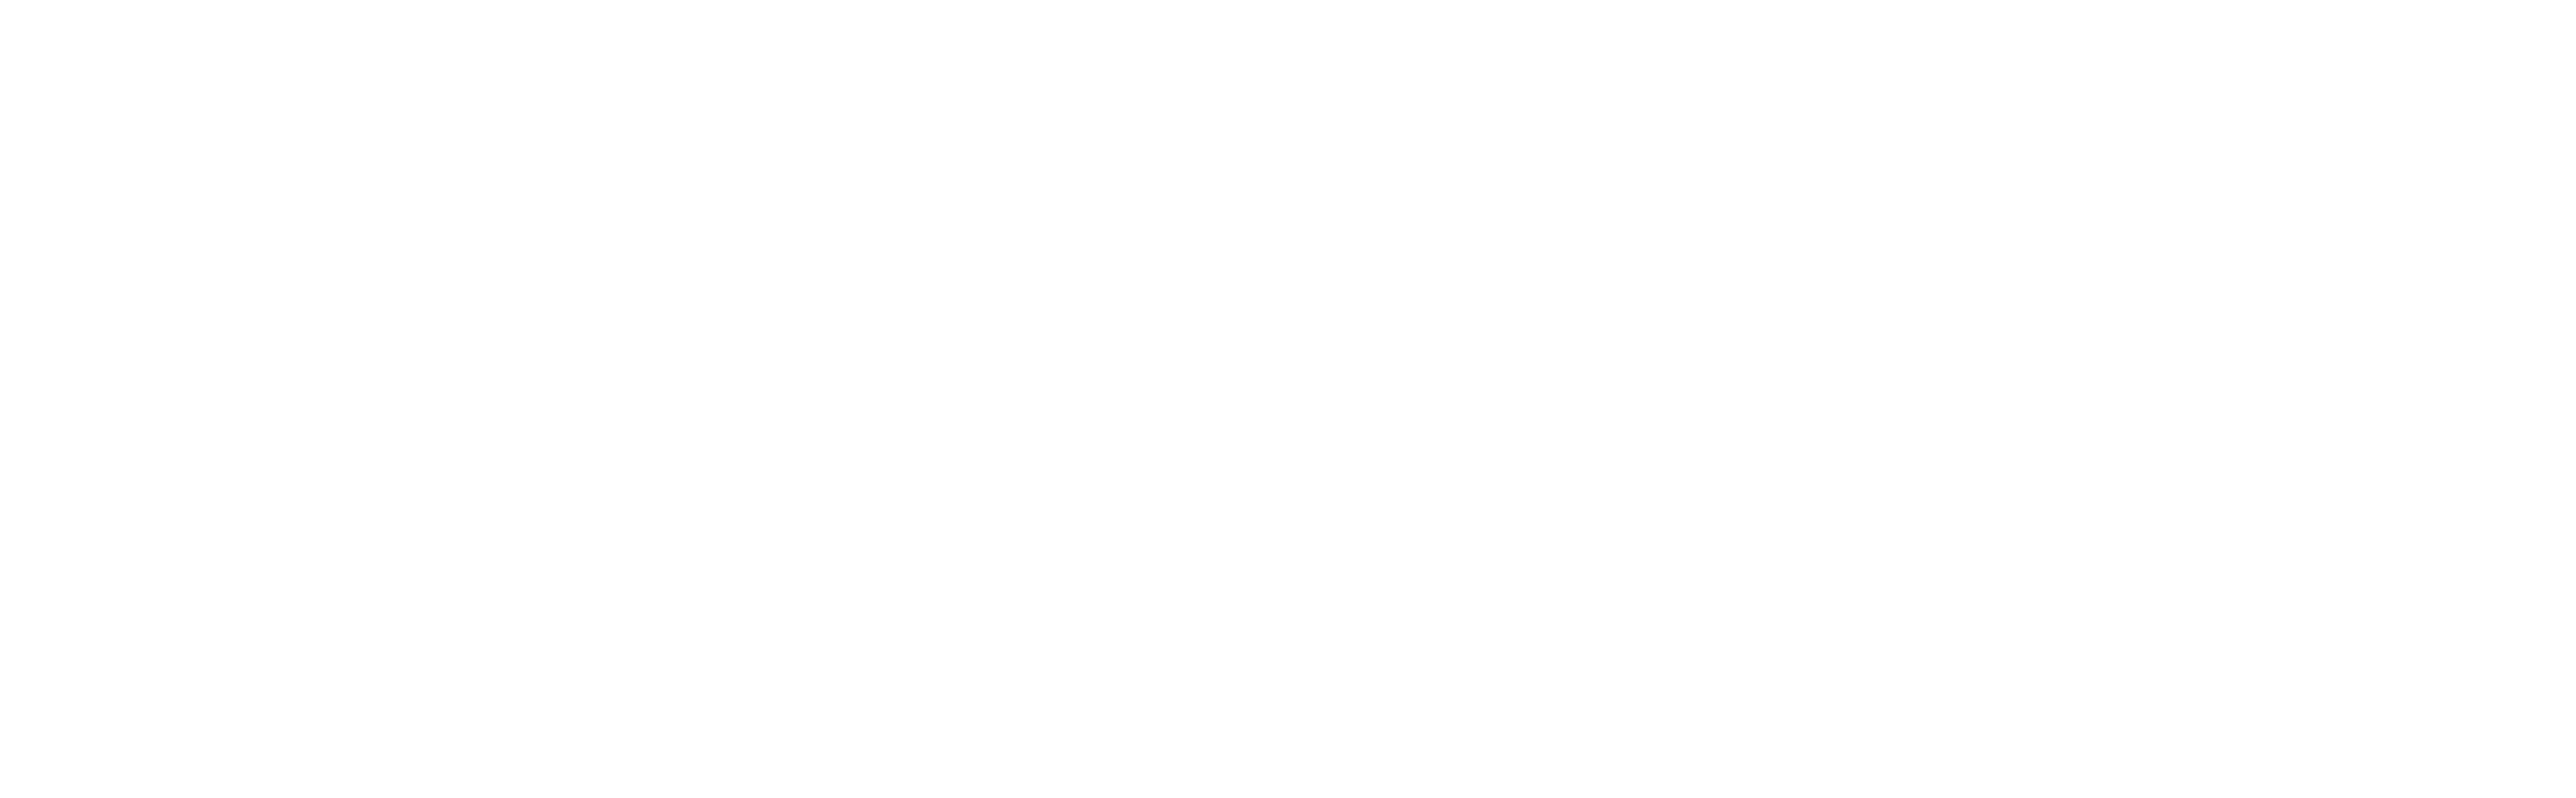 Esperanza Colombia Radio 96.3 FM